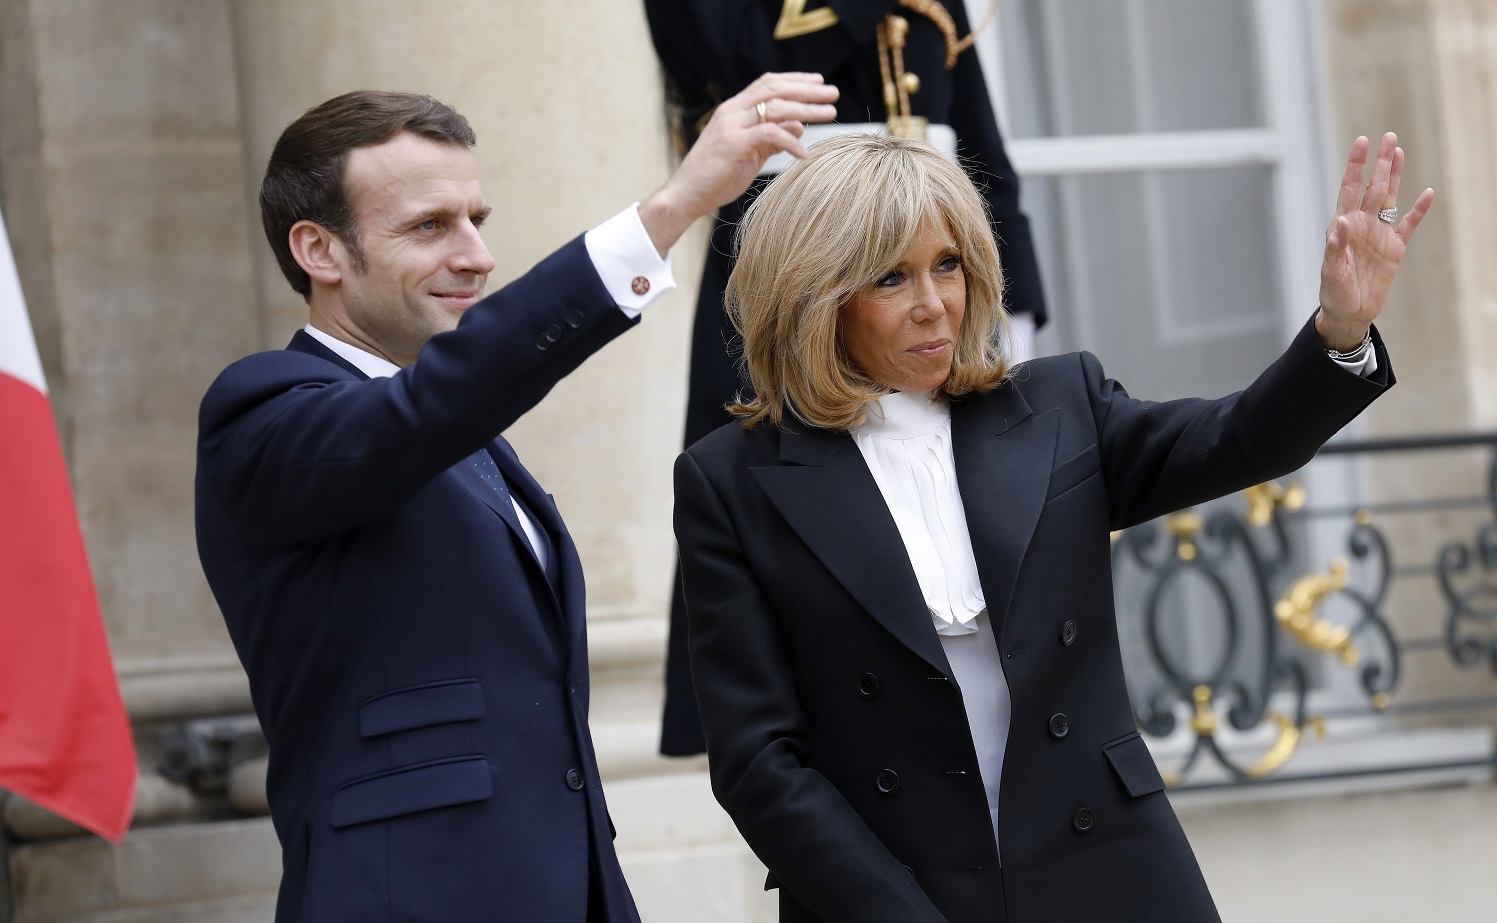 Emmanuel Macron: Το αναπάντεχα τρυφερό στιγμιότυπο με τη σύζυγό του στο αεροπλάνο